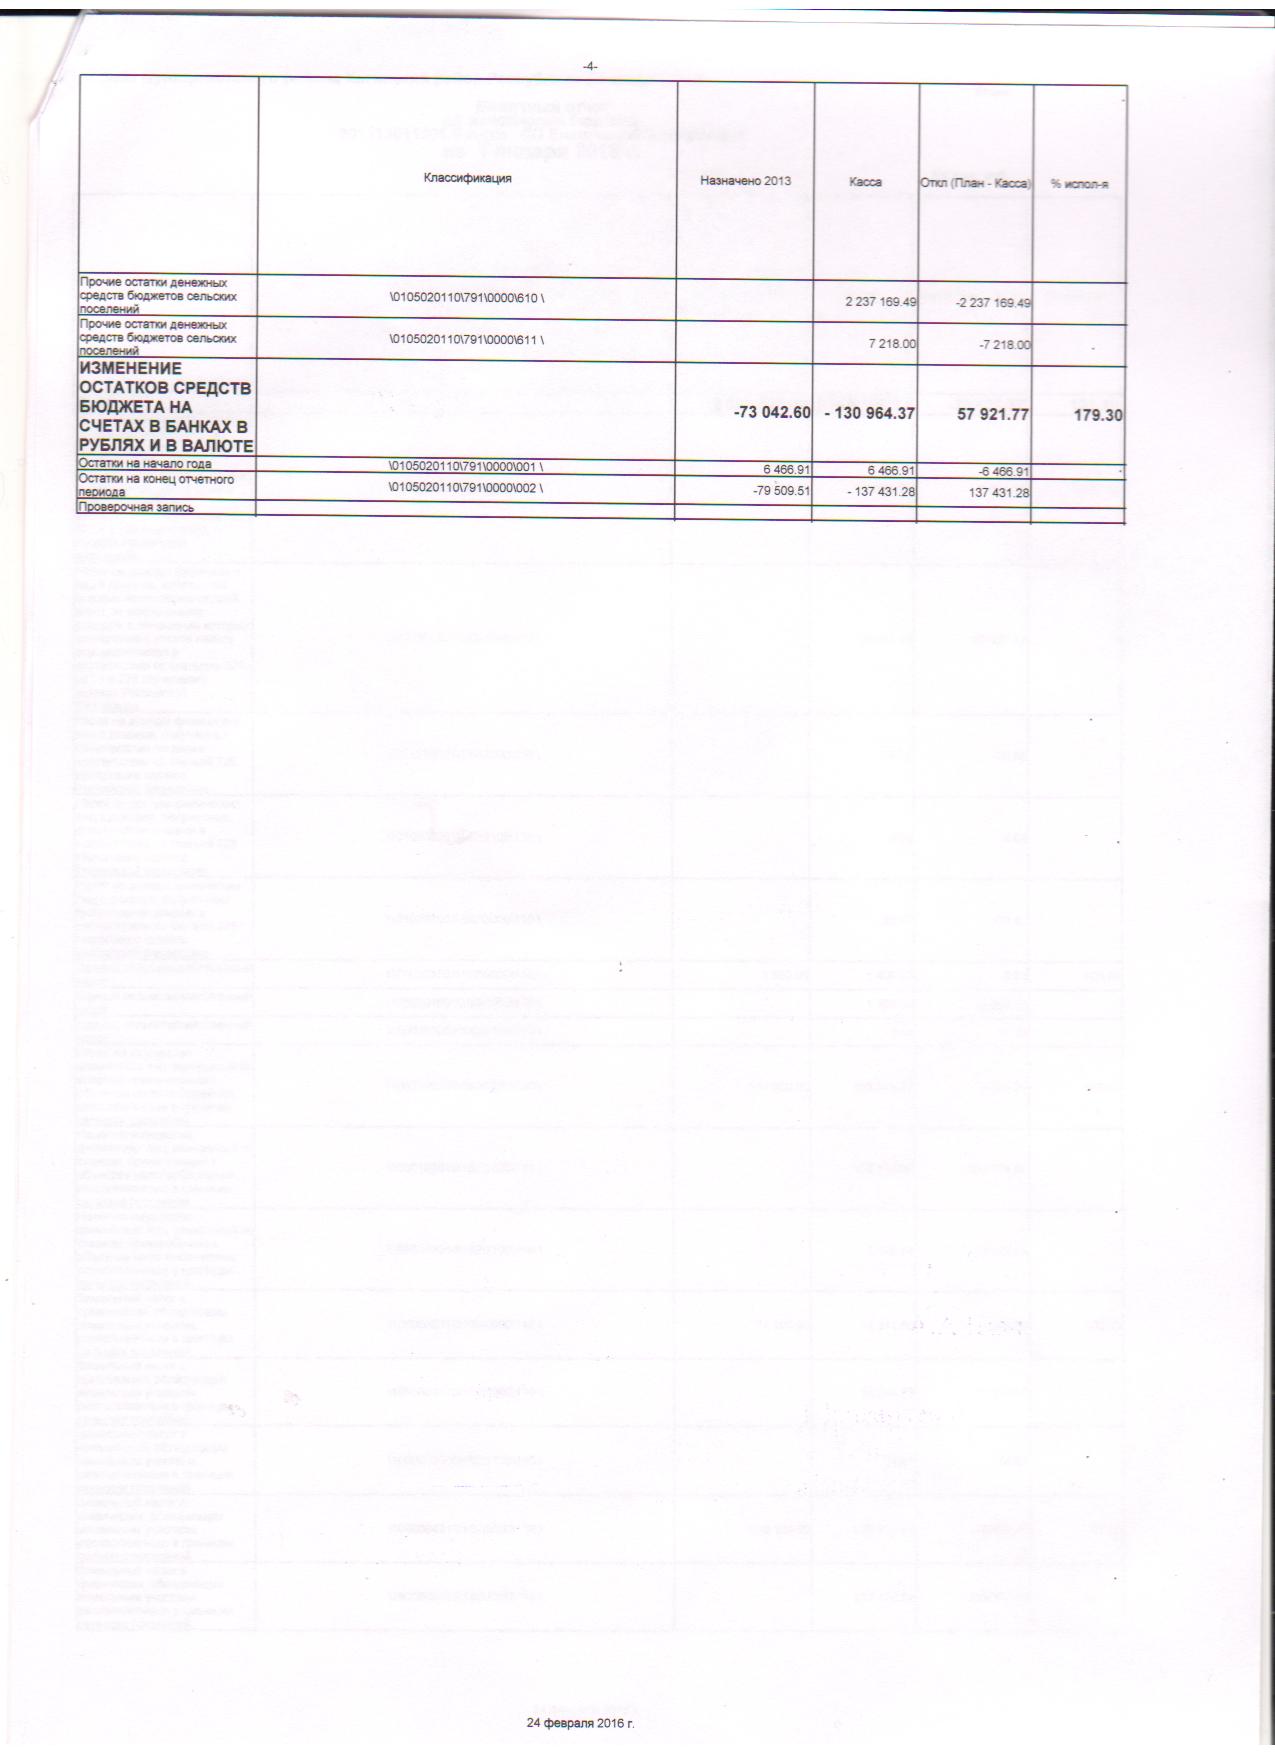 месячный отчет об исполнении бюджета на 01.01.2016г. 003